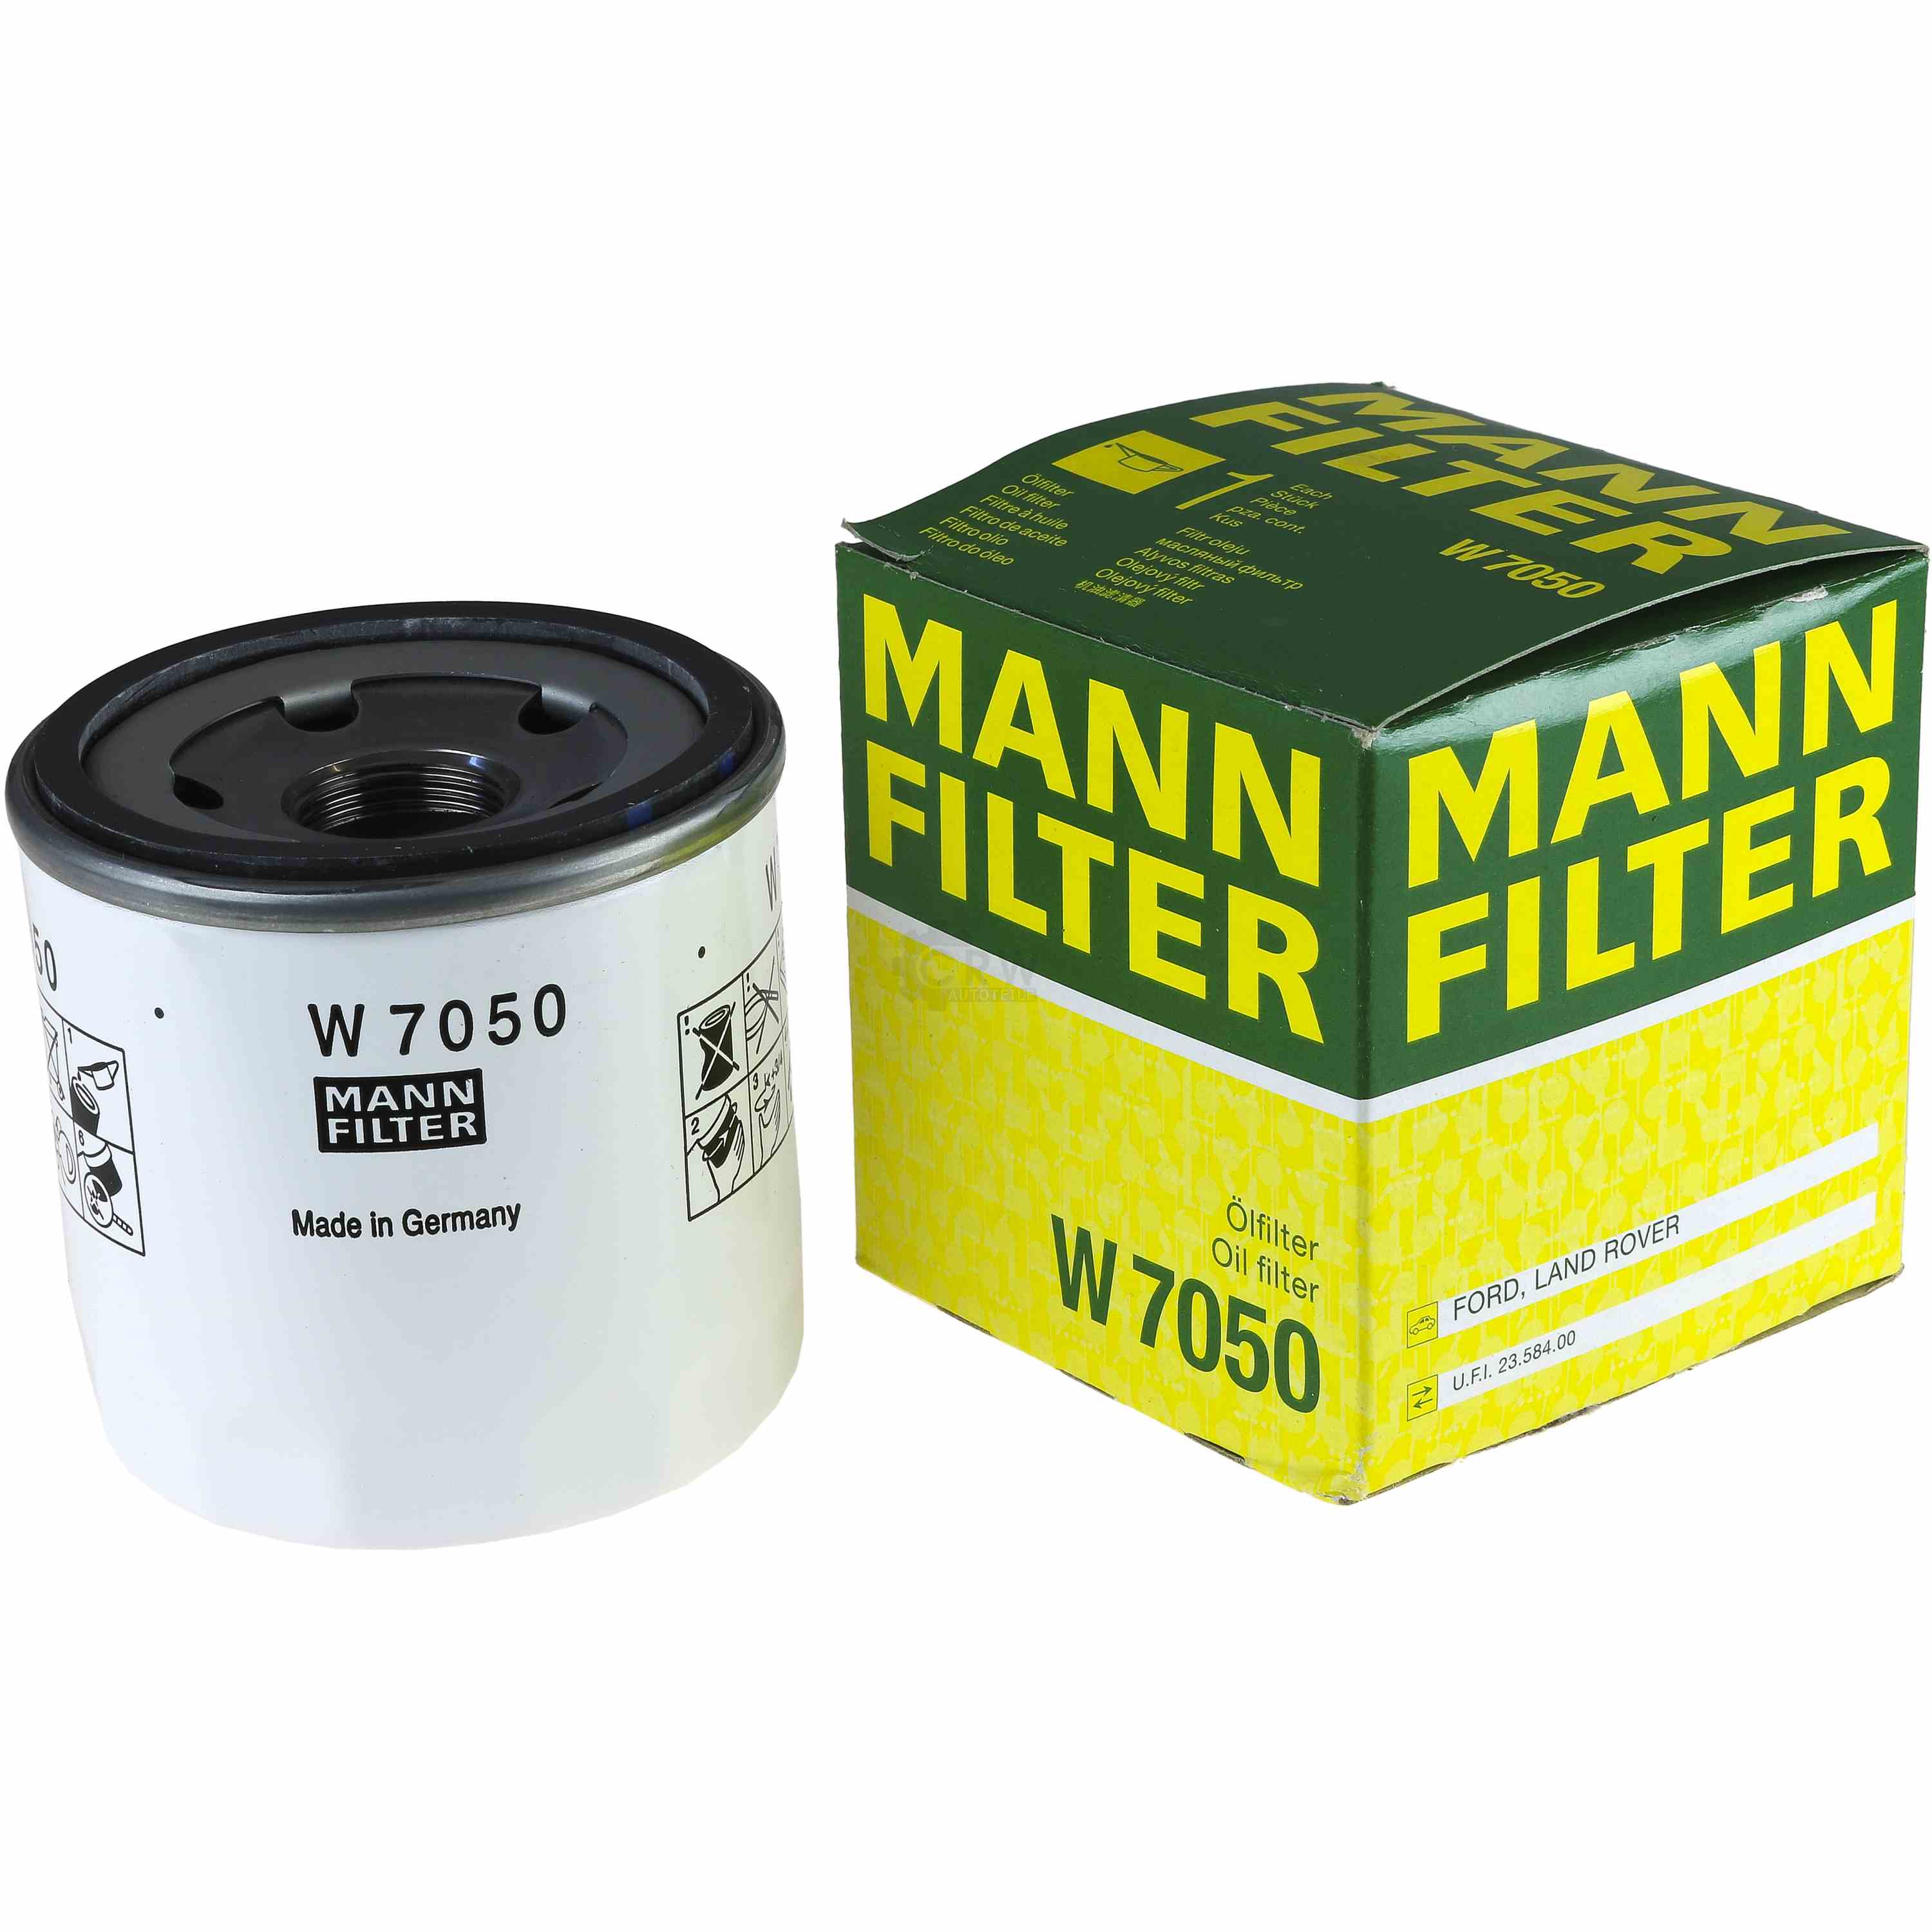 MANN-FILTER Ölfilter W 7050 Oil Filter